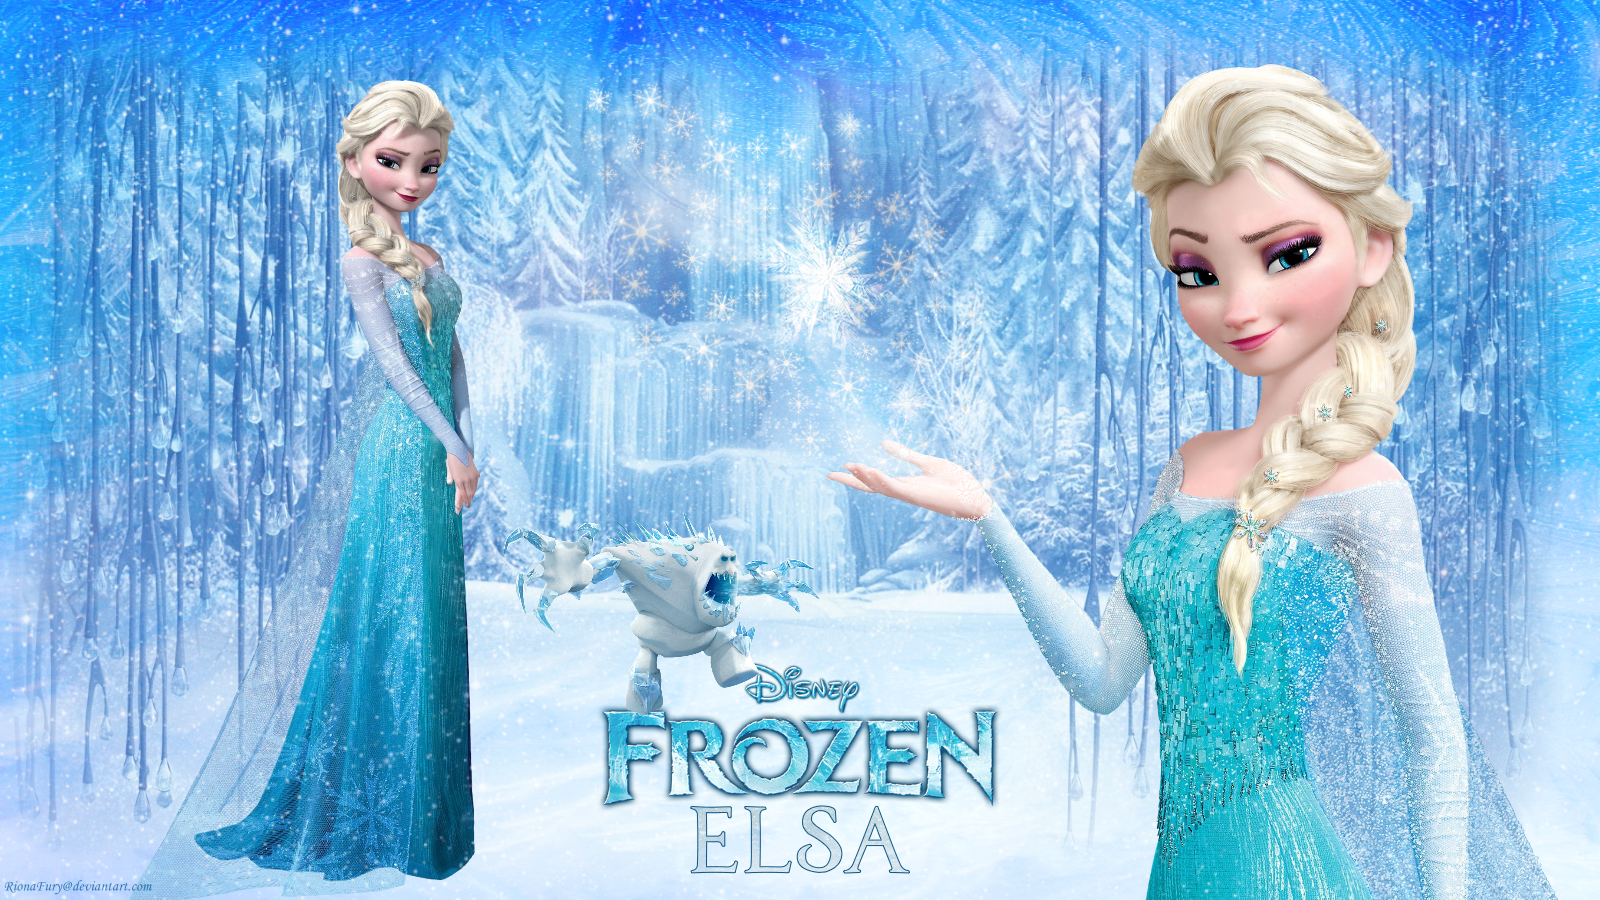 Frozen Elsa The Snow Queen Wallpaper